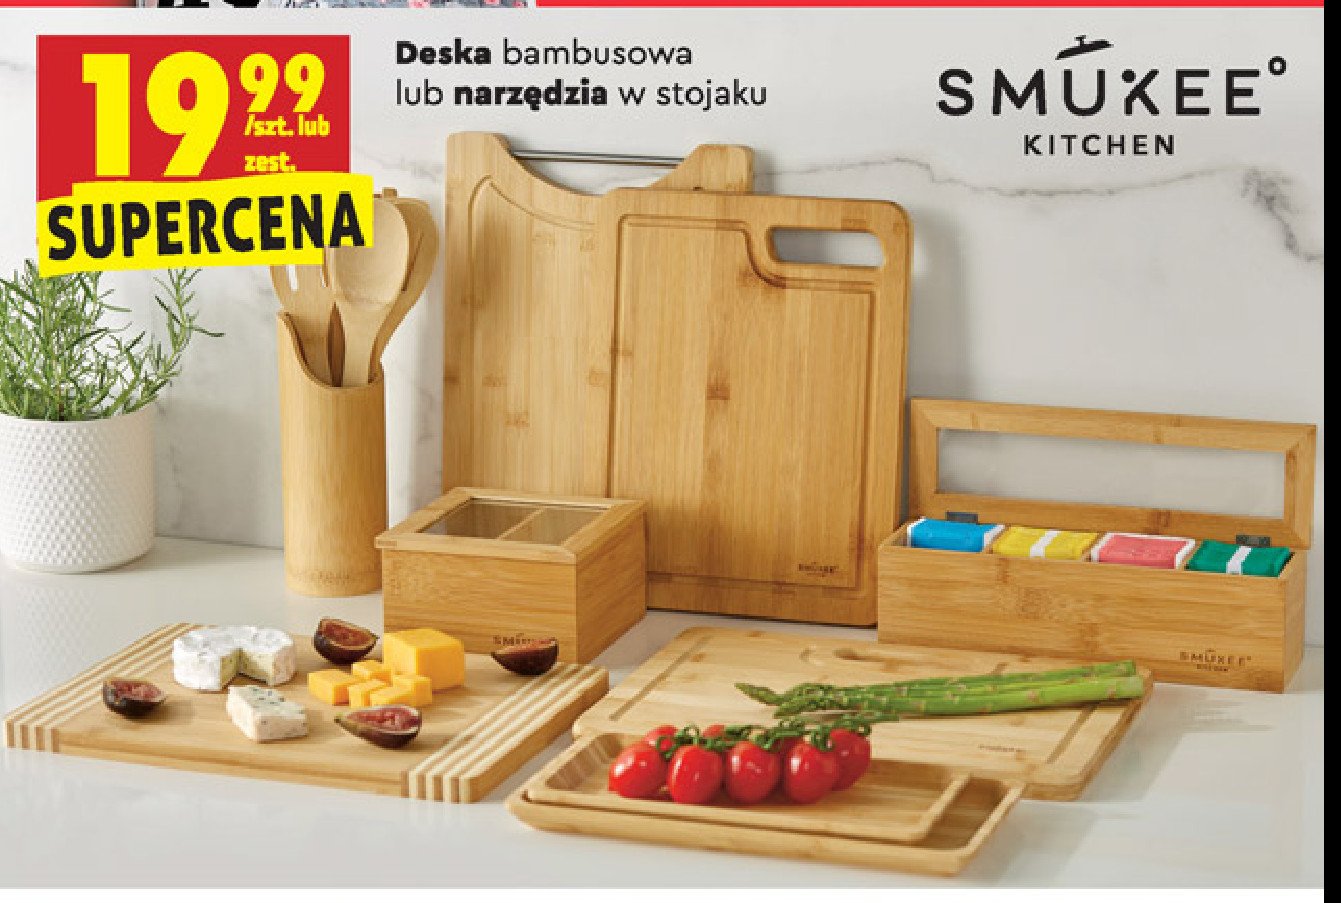 Deska bambusowa Smukee kitchen promocja